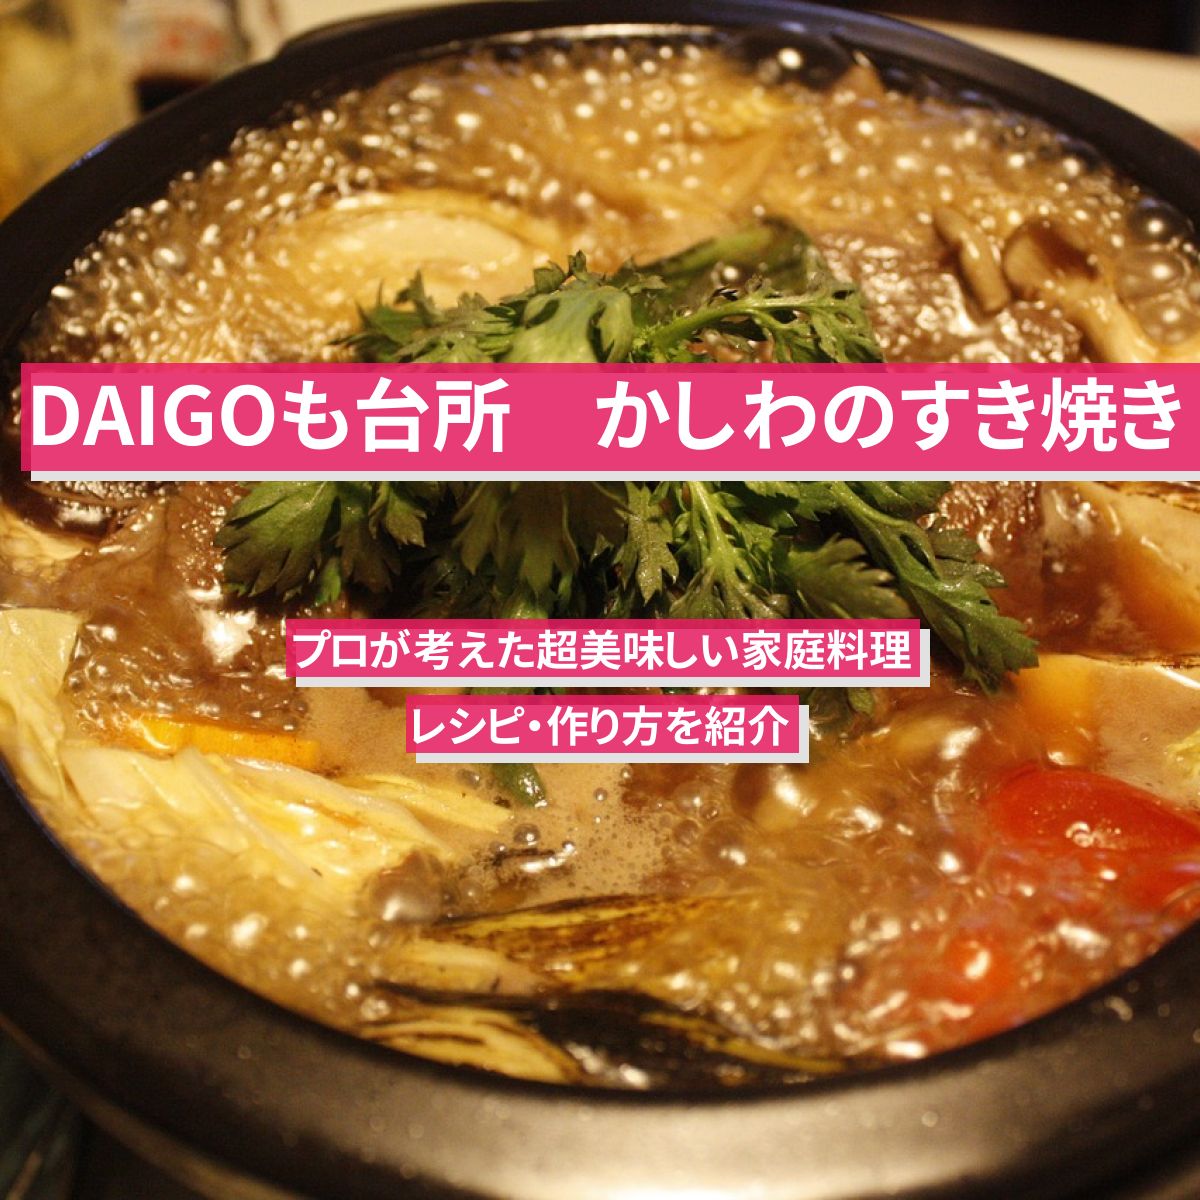 【DAIGOも台所】『かしわのすき焼き』のレシピ・作り方を紹介